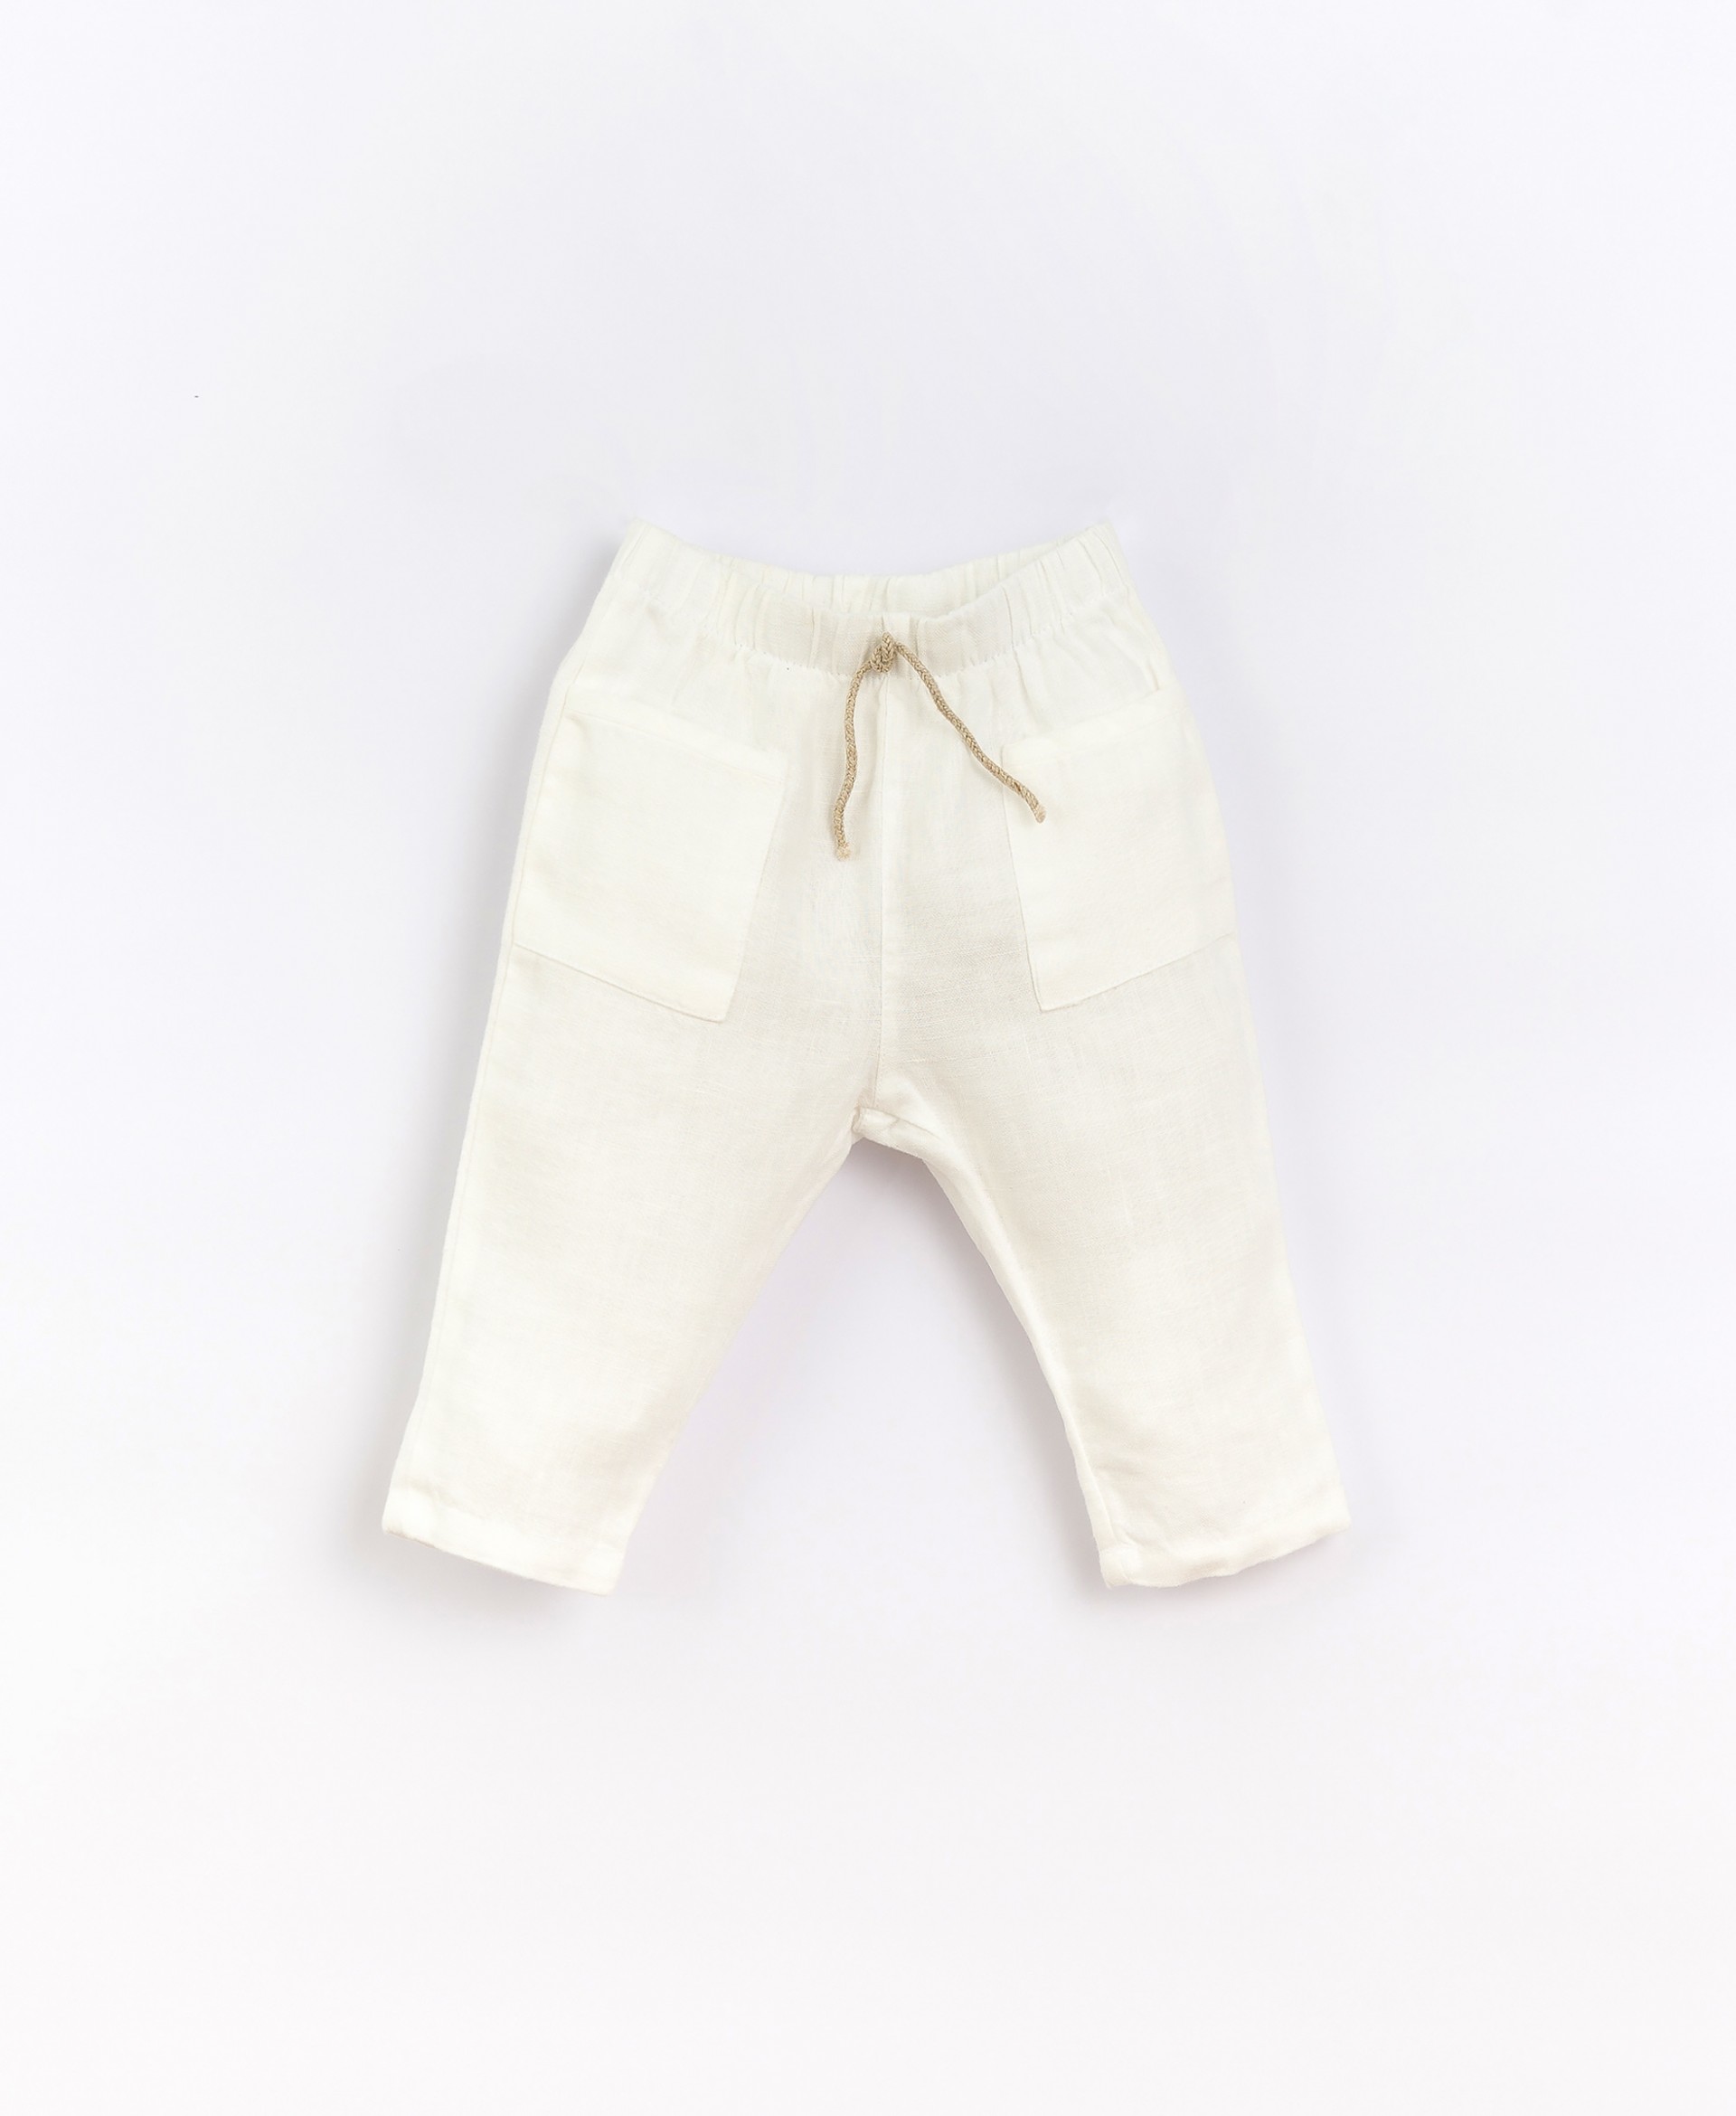  Pantalones de lino con cinturón elástico | Basketry 